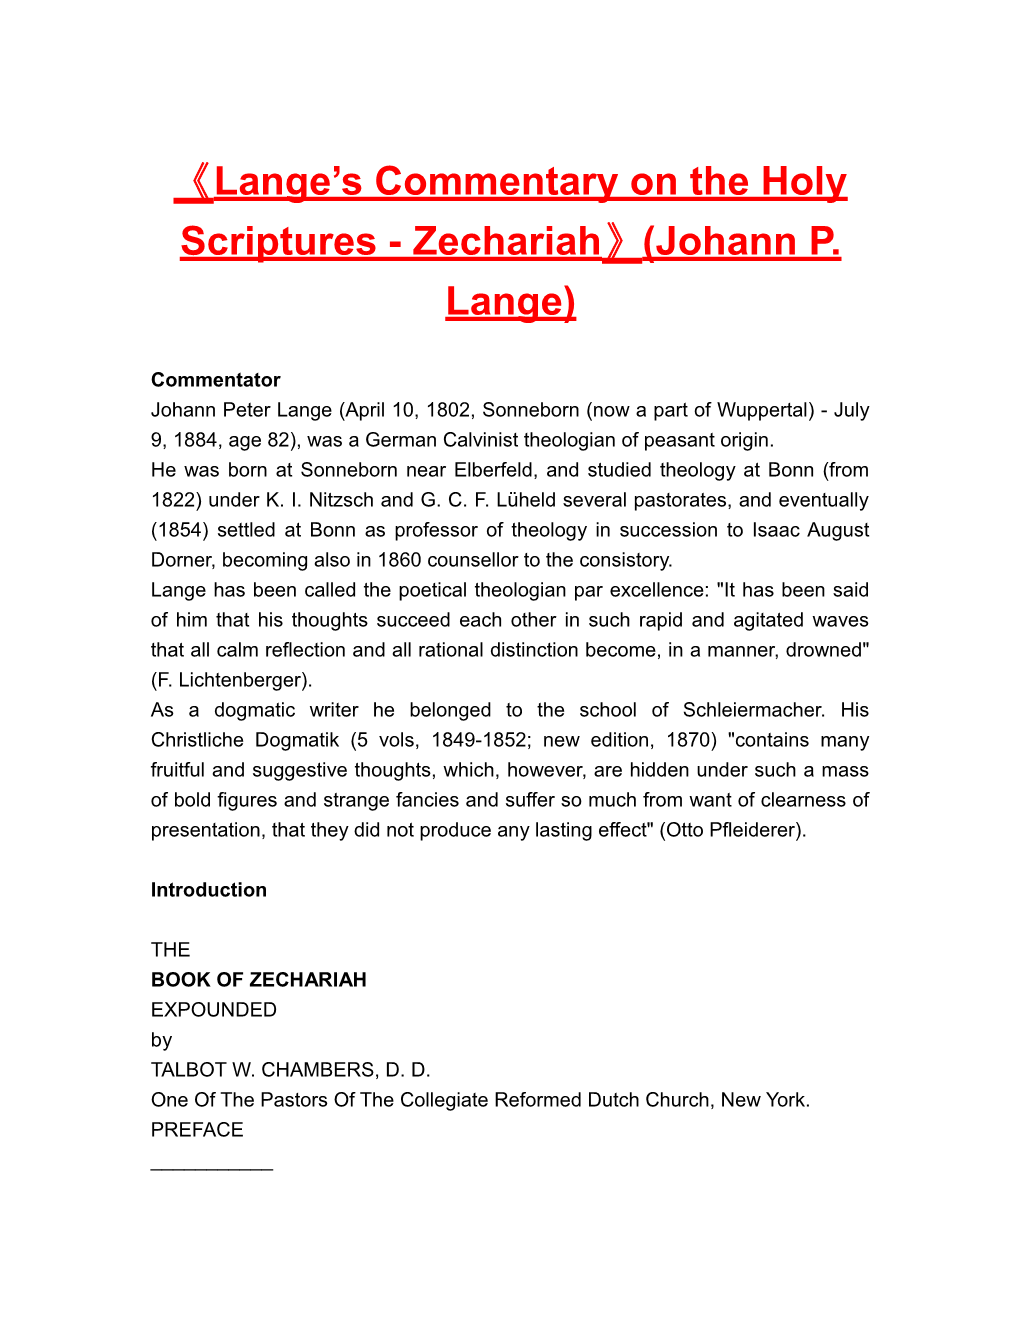 Lange S Commentary on the Holy Scriptures - Zechariah (Johann P. Lange)